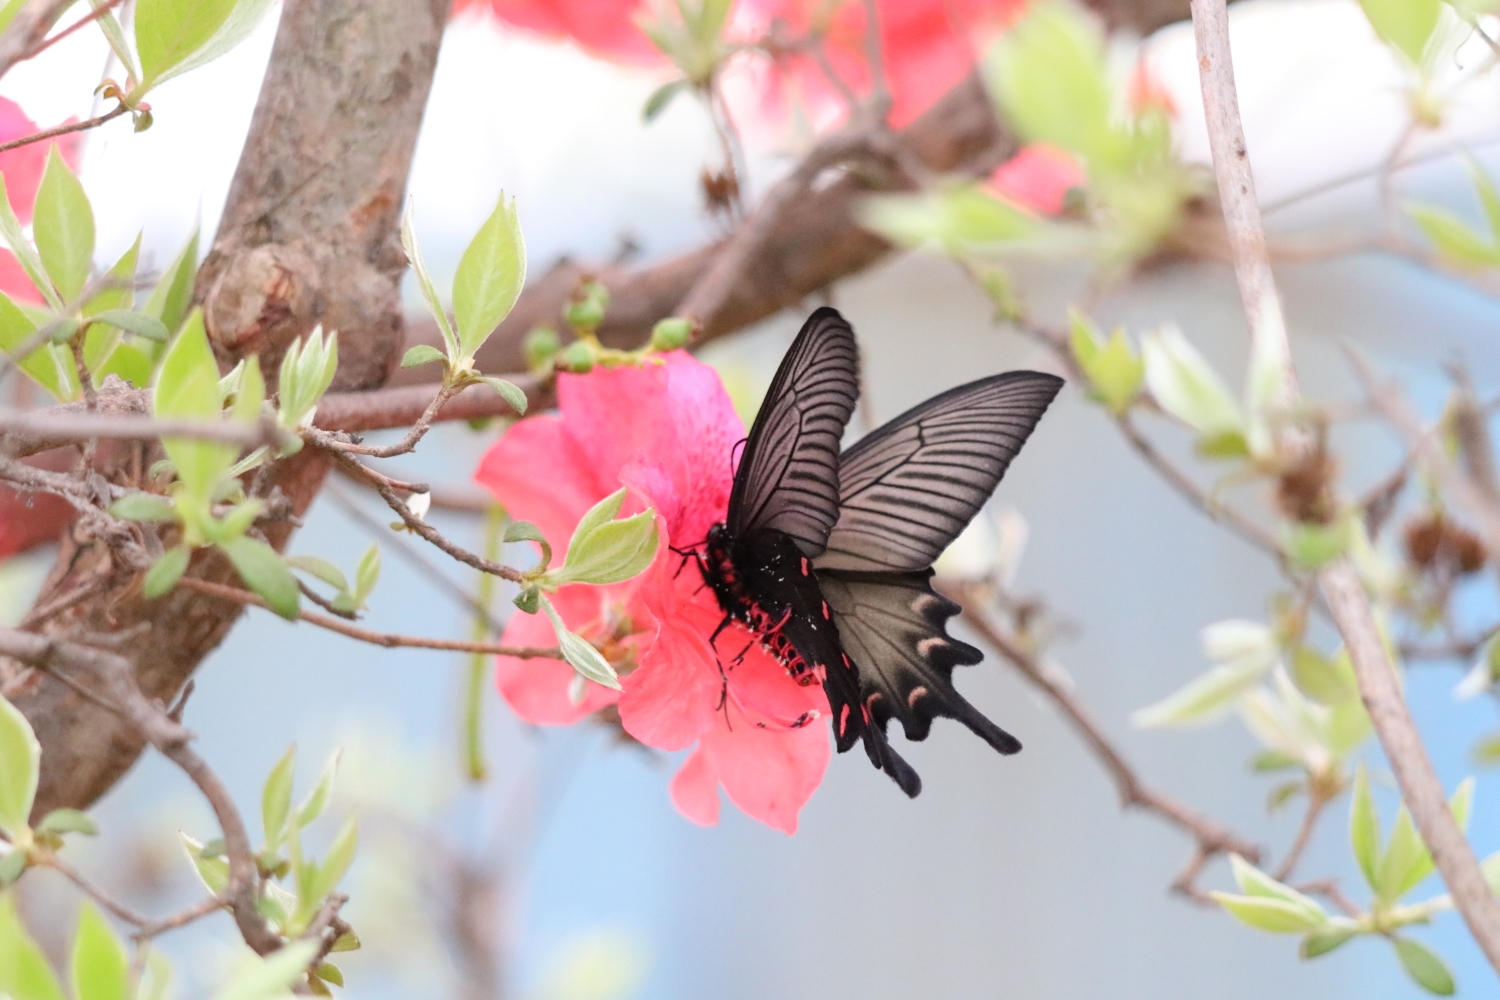 黑褐色的蝴蝶与粉红色杜鹃花交相辉映